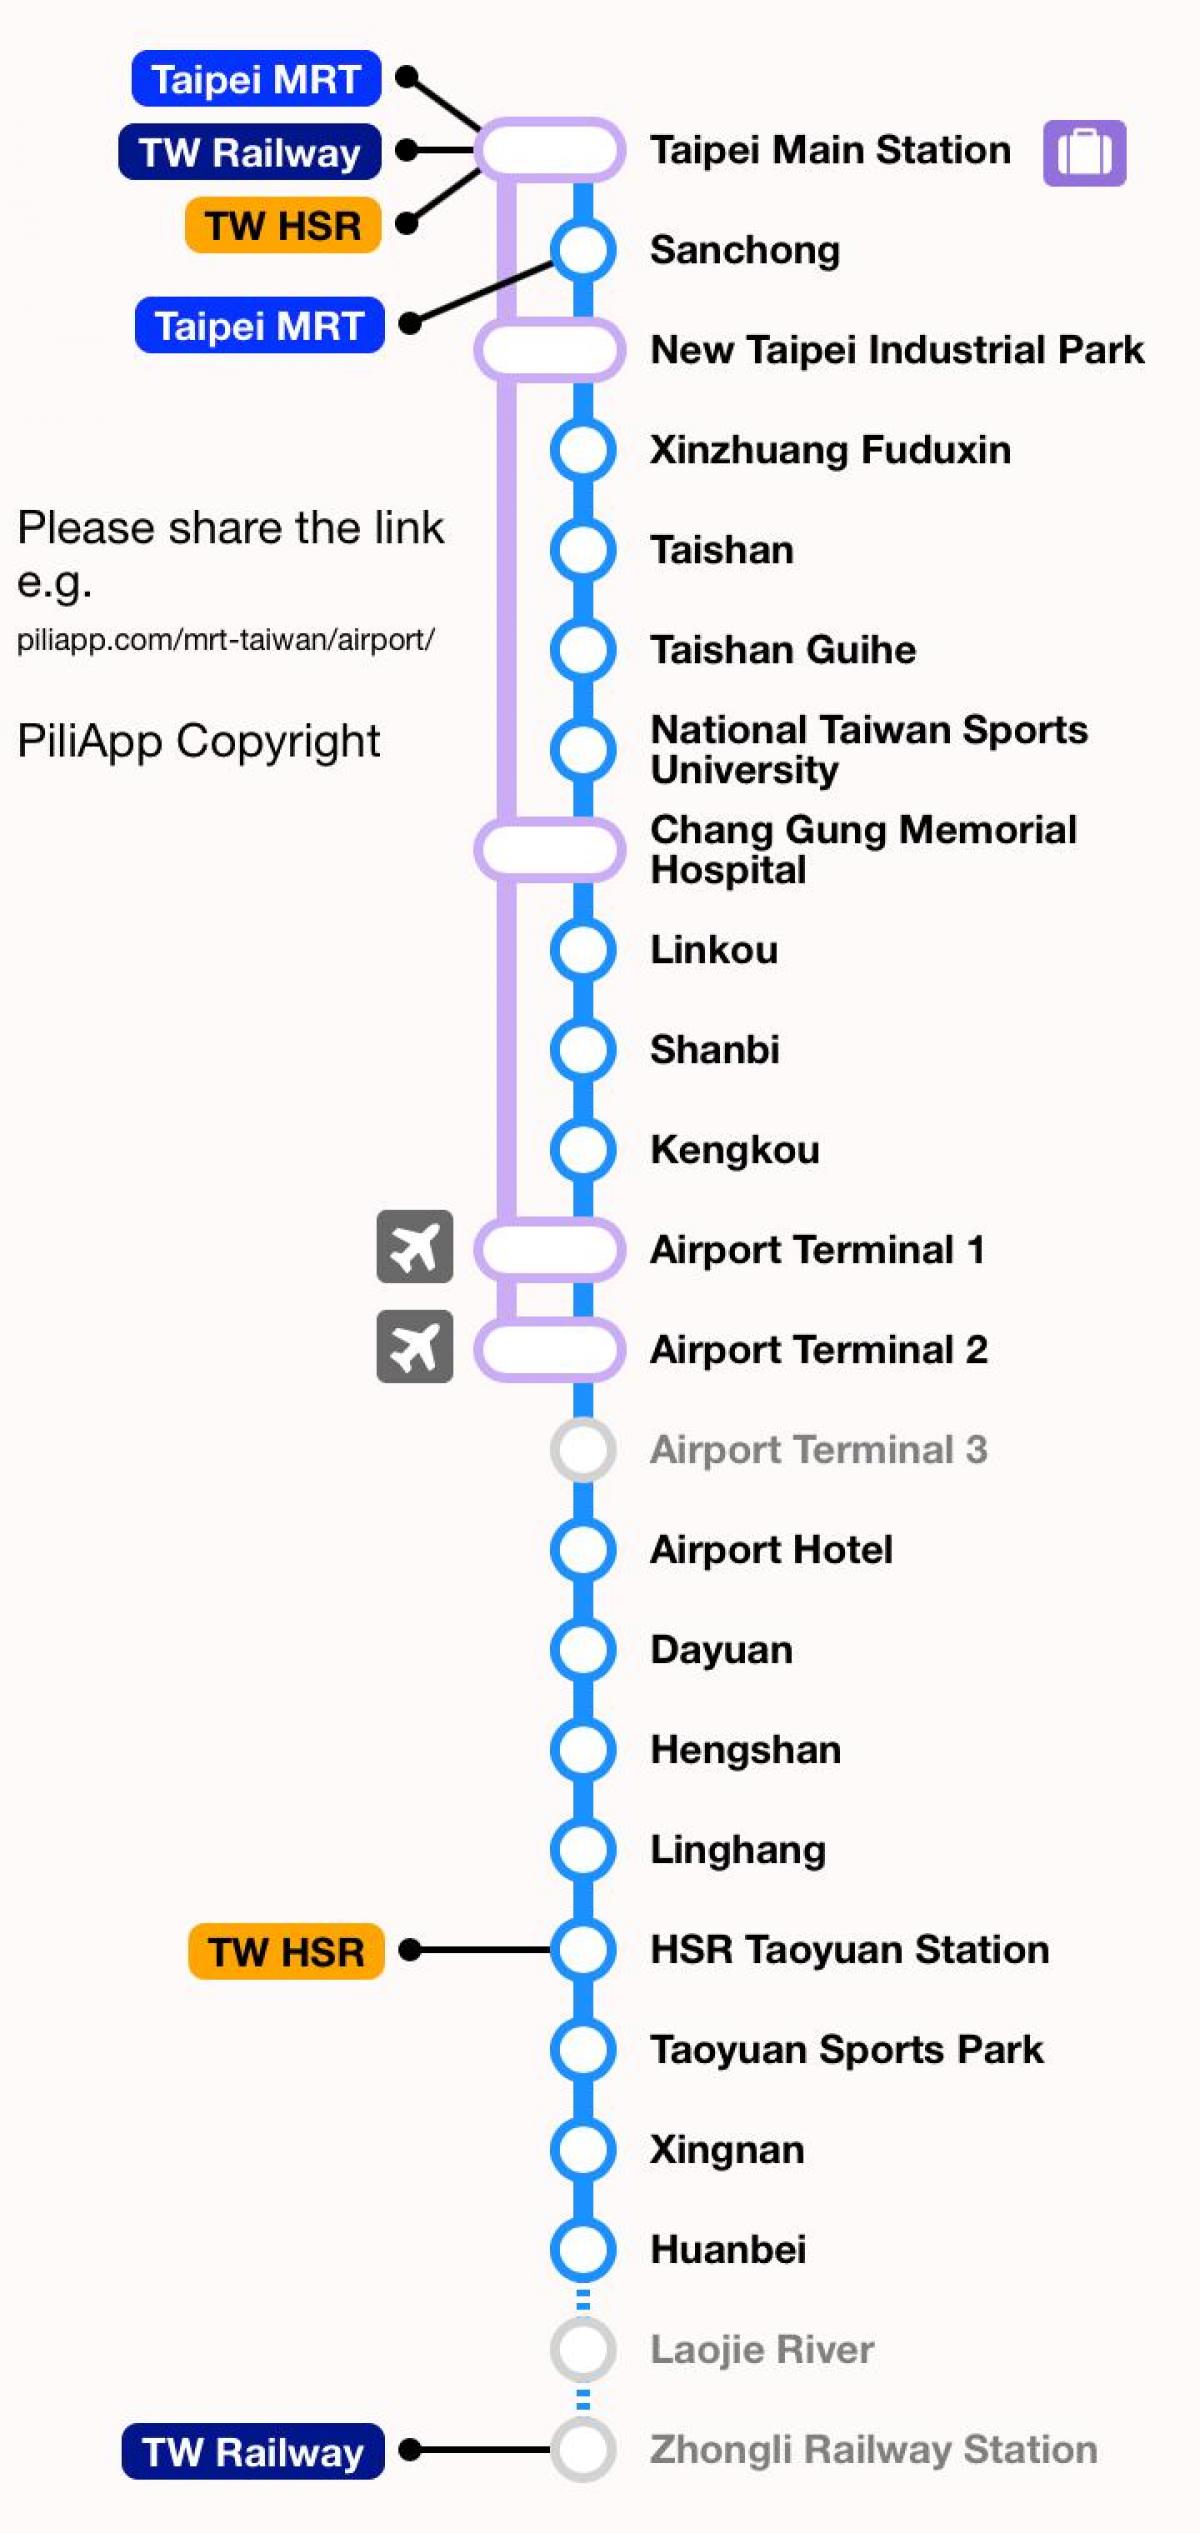 Taipei mrt térkép taoyuan repülőtér